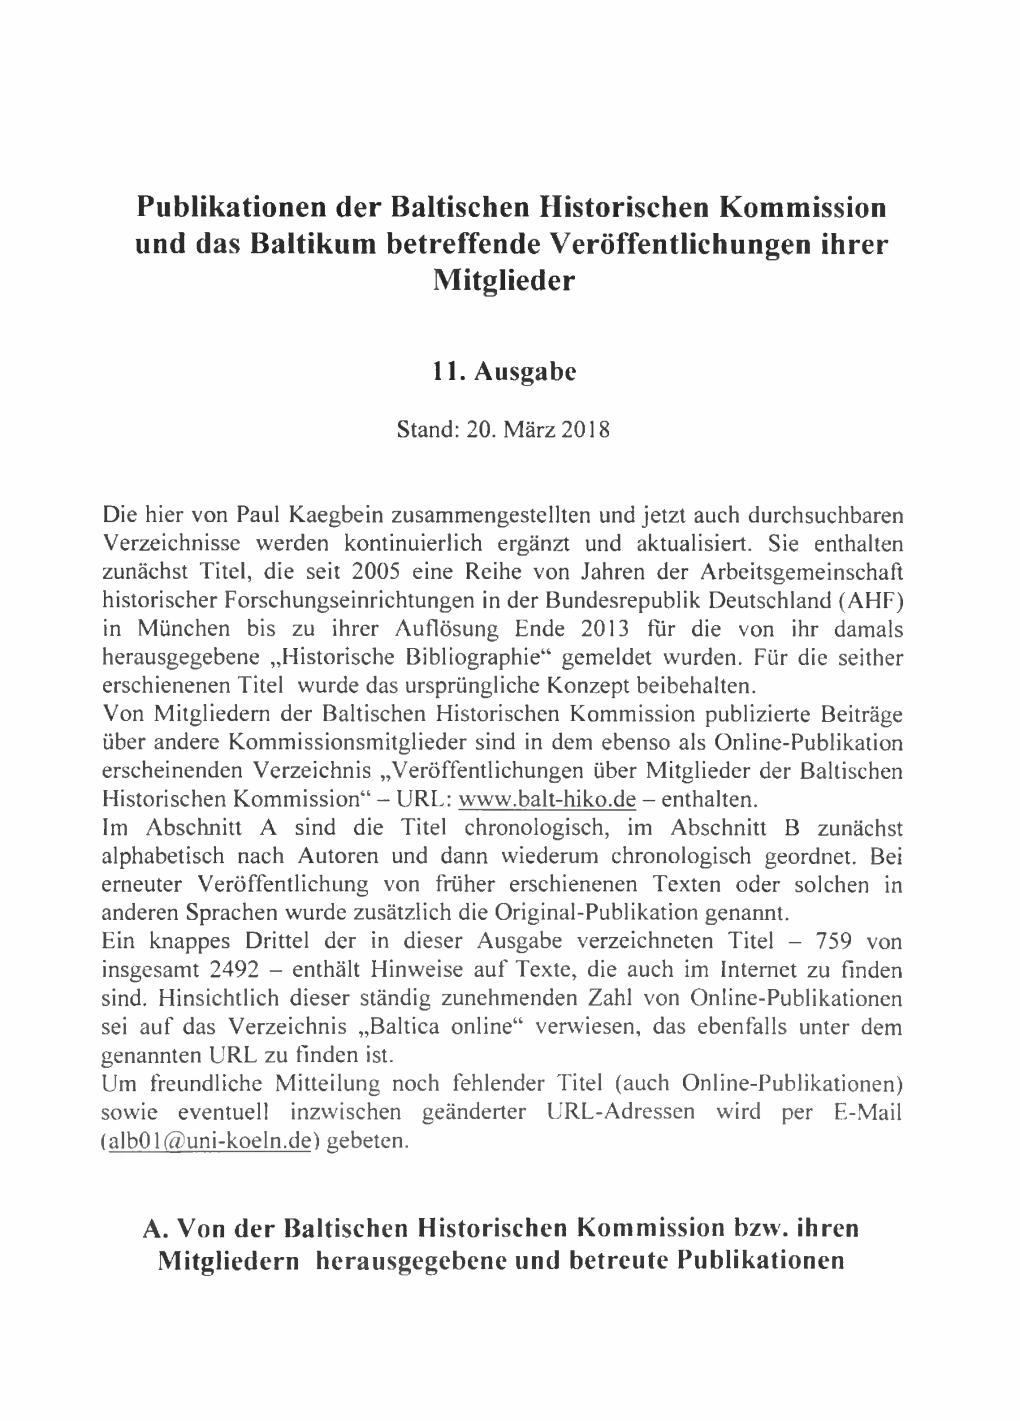 Publikationen Der Baltischen Historischen Kommission Und Das Baltikum Betreffende Veröffentlichungen Ihrer Mitglieder